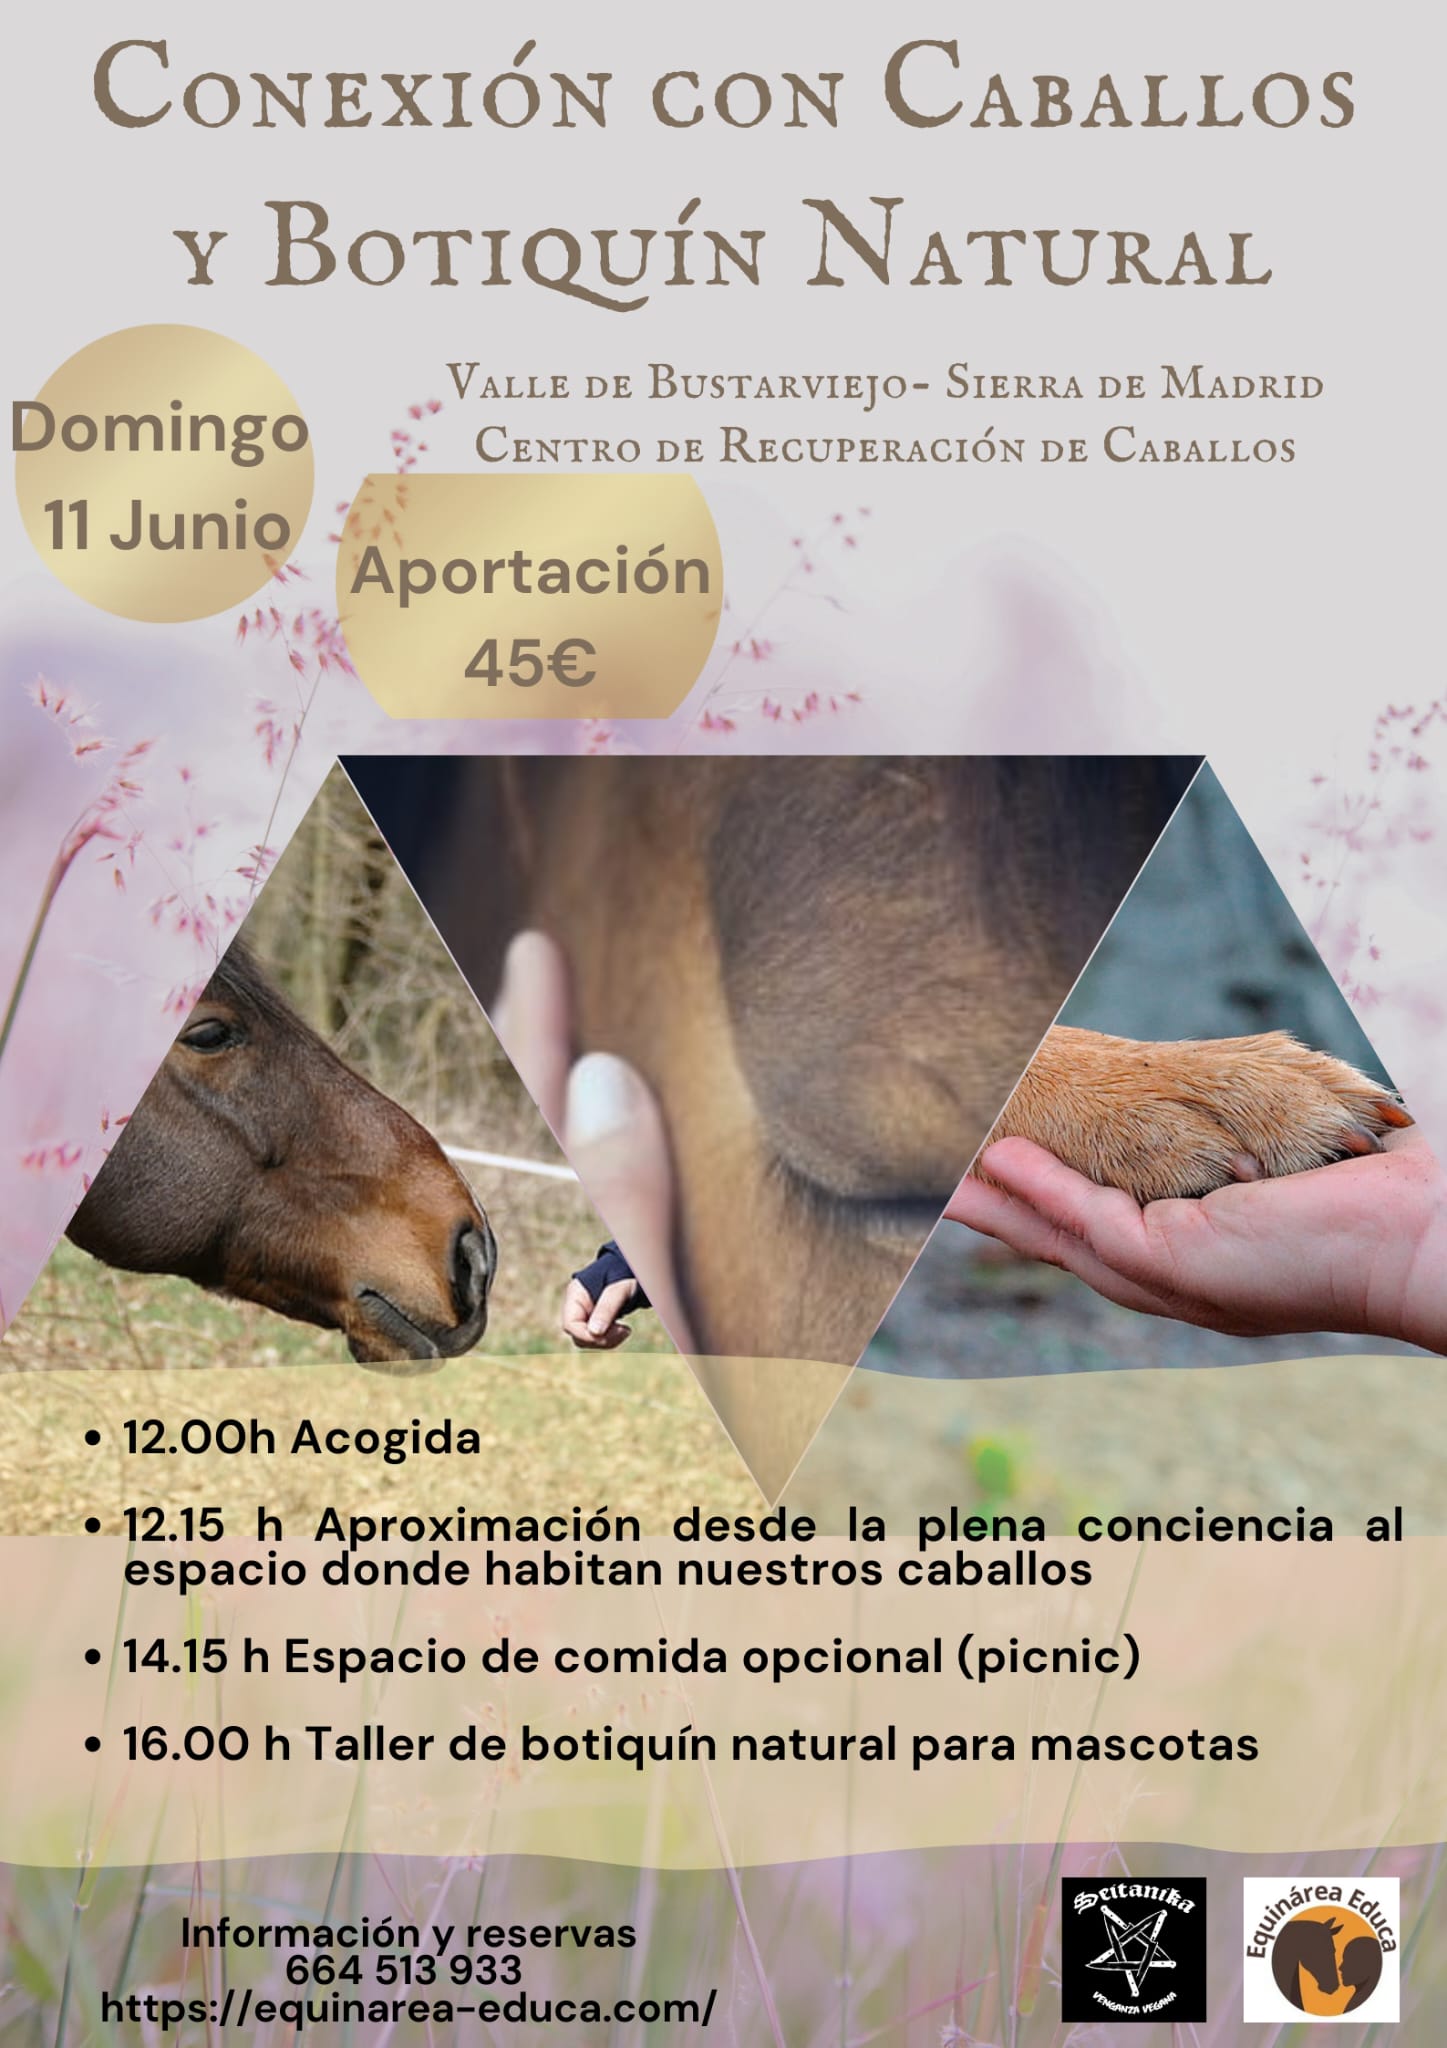 Taller Conexión con caballos y botiquín natural - Valle de Bustarviejo, Sierra de Madrid - Domingo 11 de Junio 2023